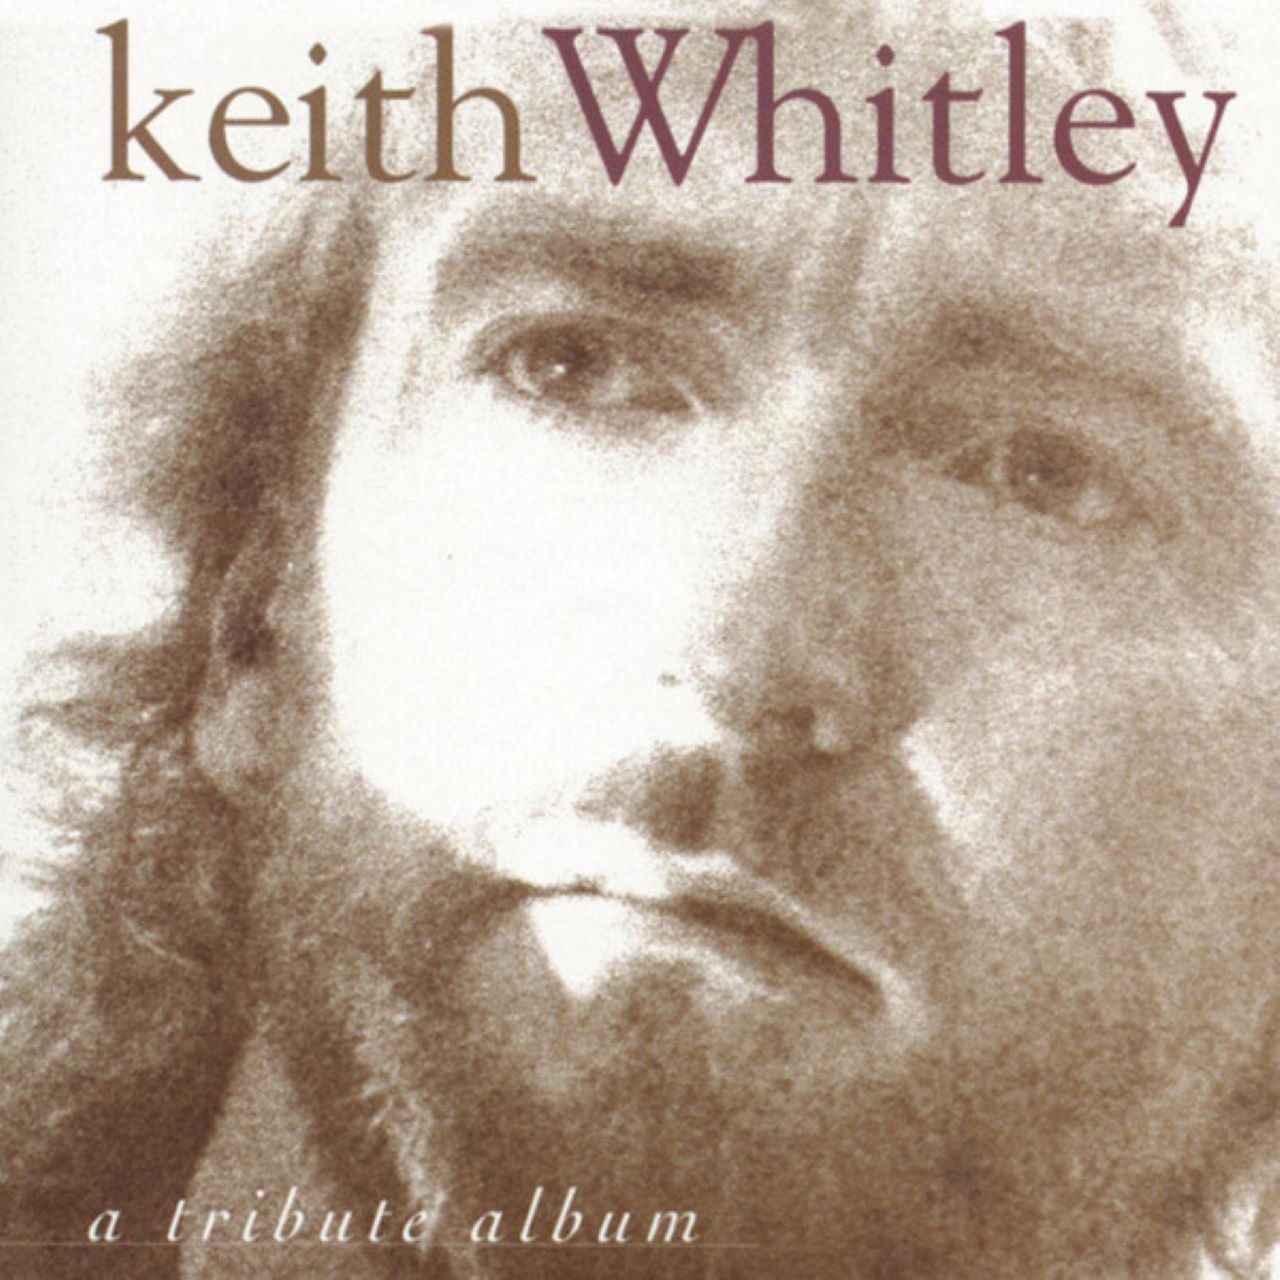 A.A.V.V. - Keith Whitley - A Tribute Album cover album